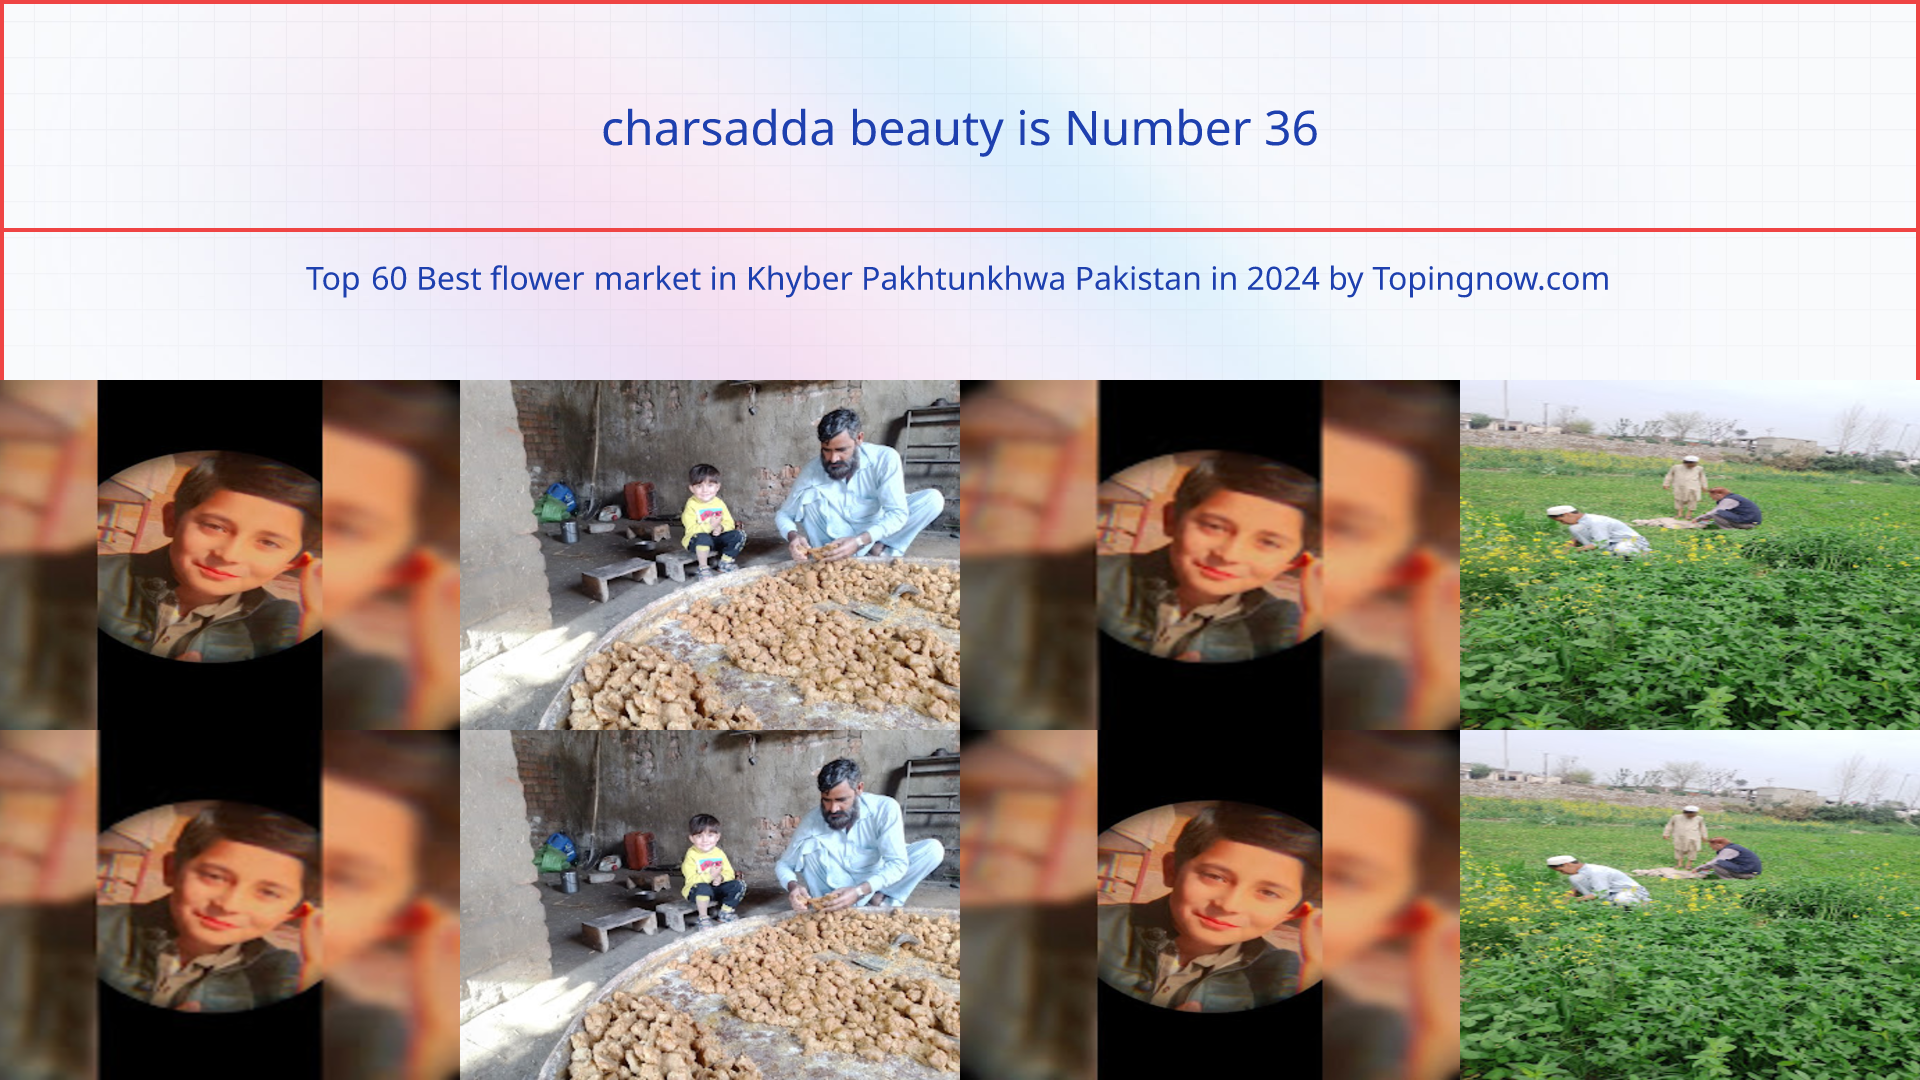 charsadda beauty: Top 60 Best flower market in Khyber Pakhtunkhwa Pakistan in 2024